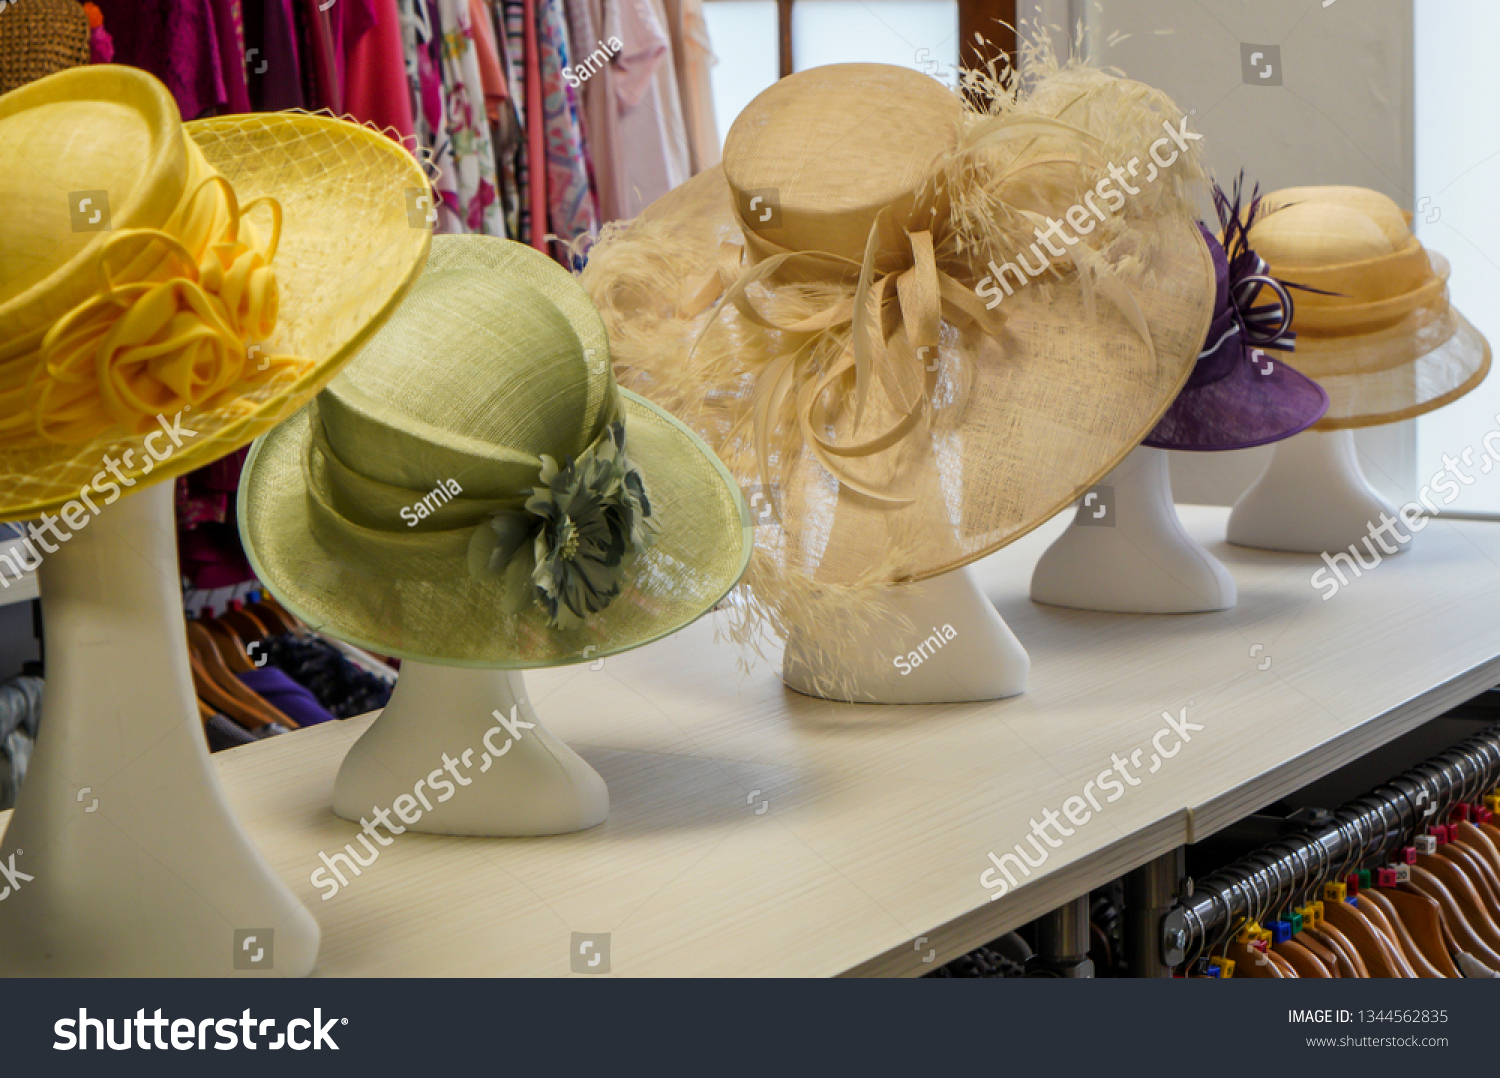 44,555 Wedding Hat Images, Stock Photos & Vectors | Shutterstock